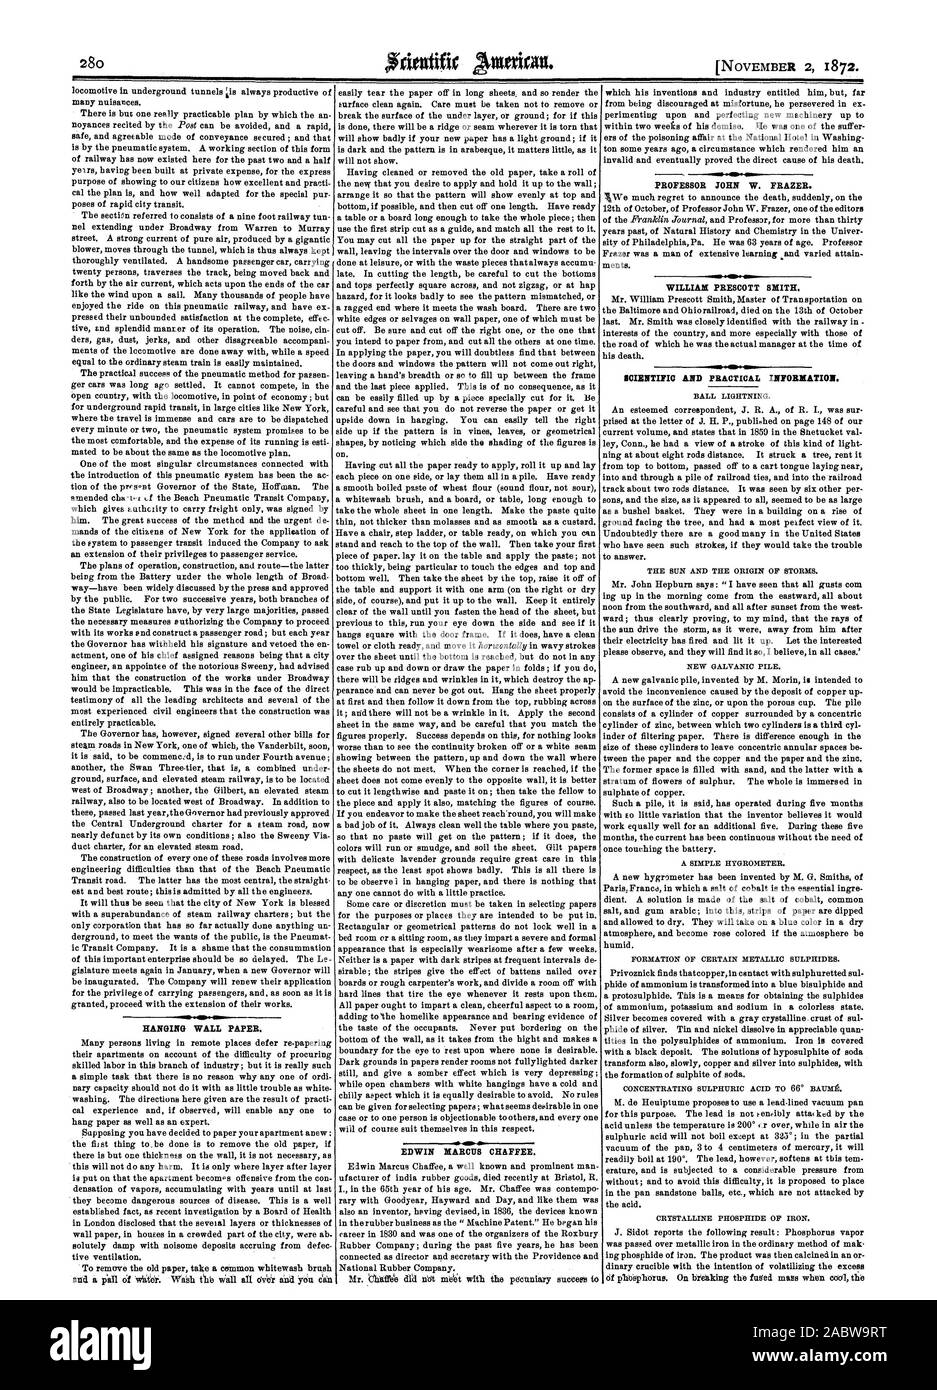 Hängende WAND PAPIER. OD. EDWIN MARCUS CHAFFEE. PROFESSOR JOHN W. FRAZER. WILLIAM PRESCOTT SMITH. Wissenschaftliche und praktische Informationen., Scientific American, 1872-11-02 Stockfoto